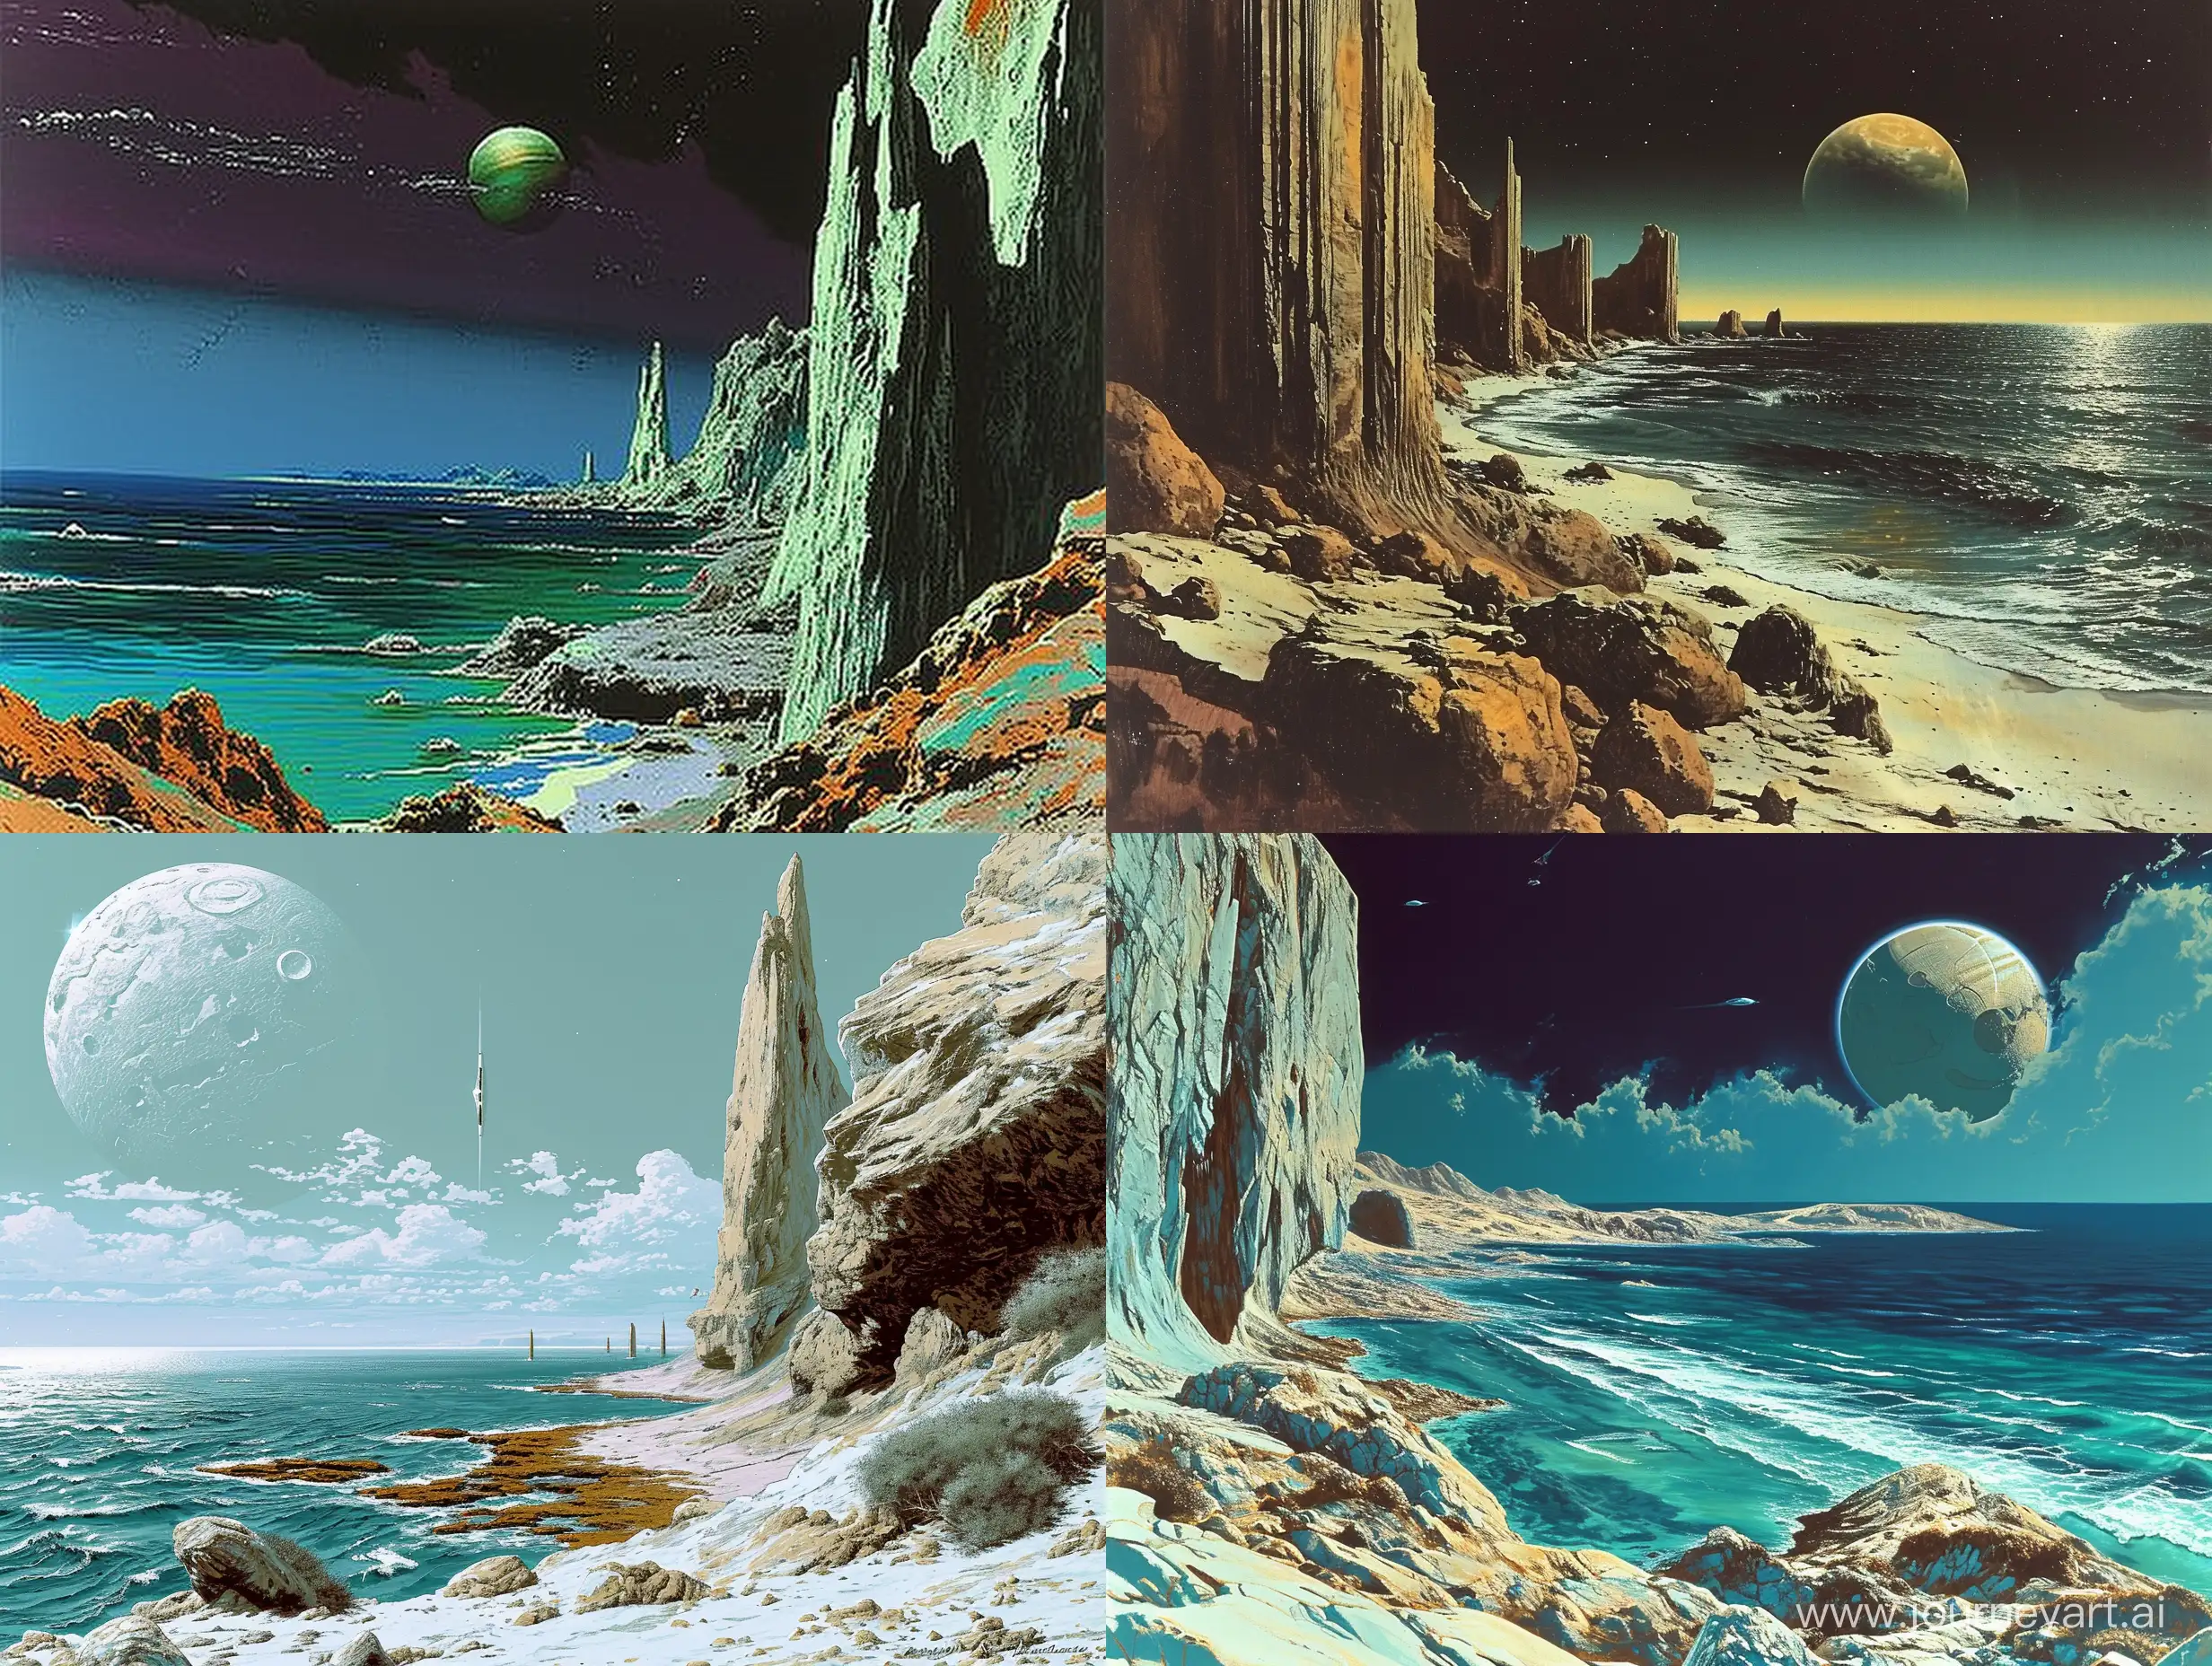 Surreal-Alien-Ocean-Landscape-in-Retro-SciFi-Art-Style